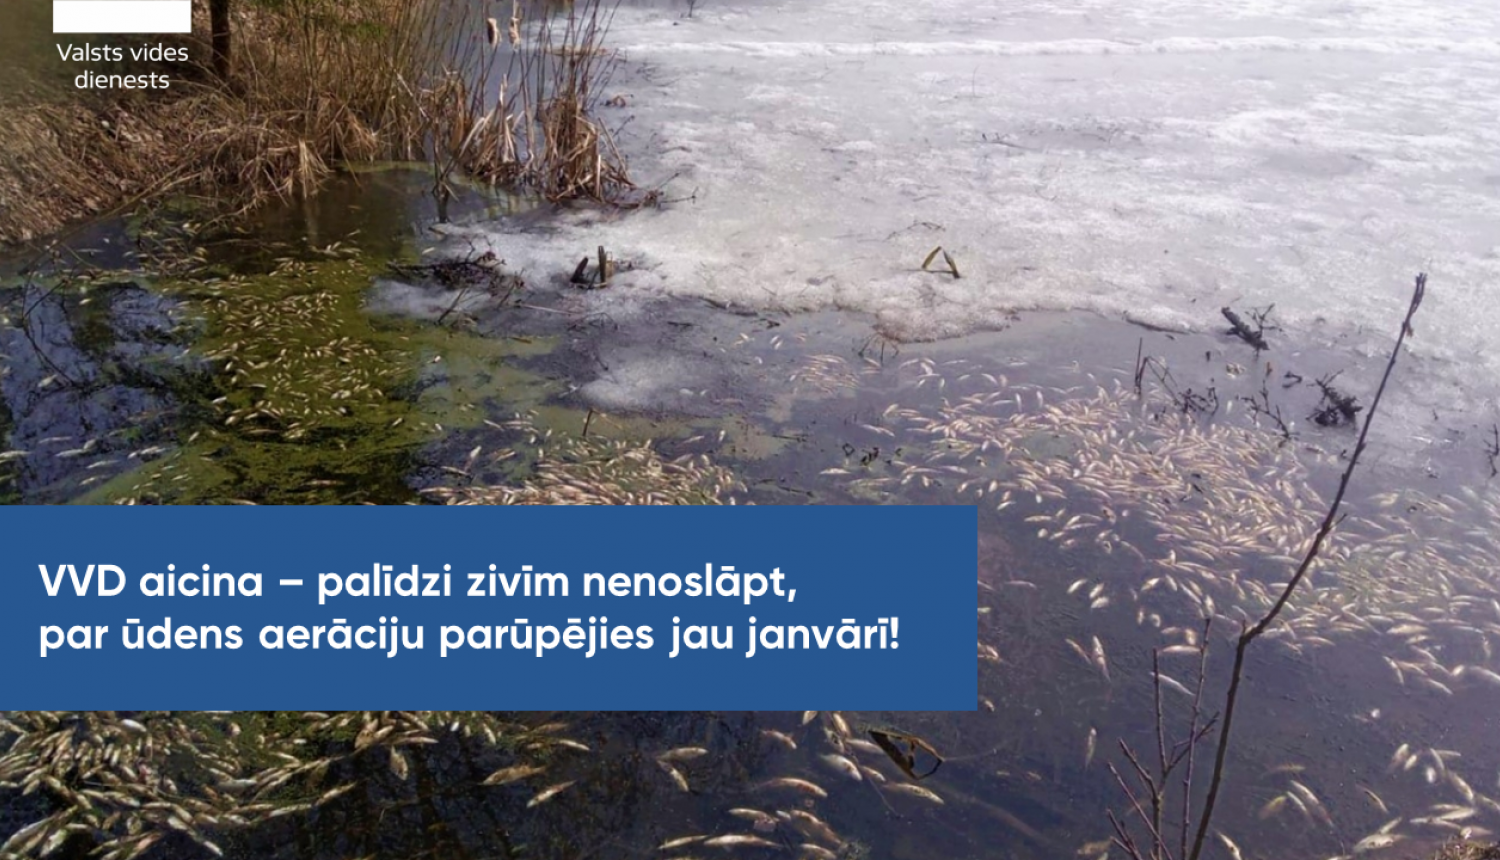 Ūdenstilpēs ar biezu ledus kārtu iespējama zivju slāpšana; VVD atgādina par pasākumiem zivju slāpšanas mazināšanai